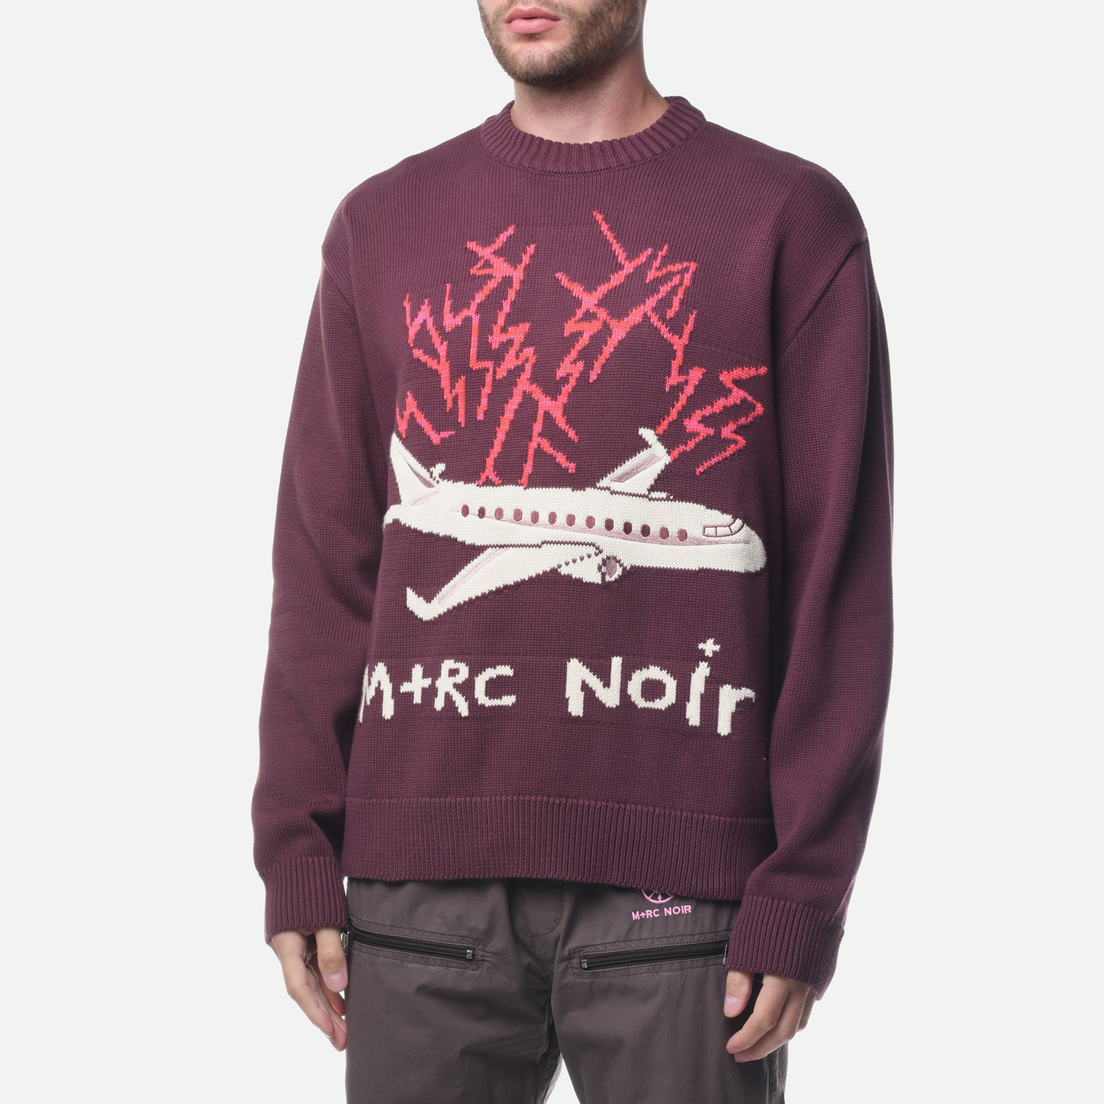 M+RC Noir Мужской свитер Bermuda